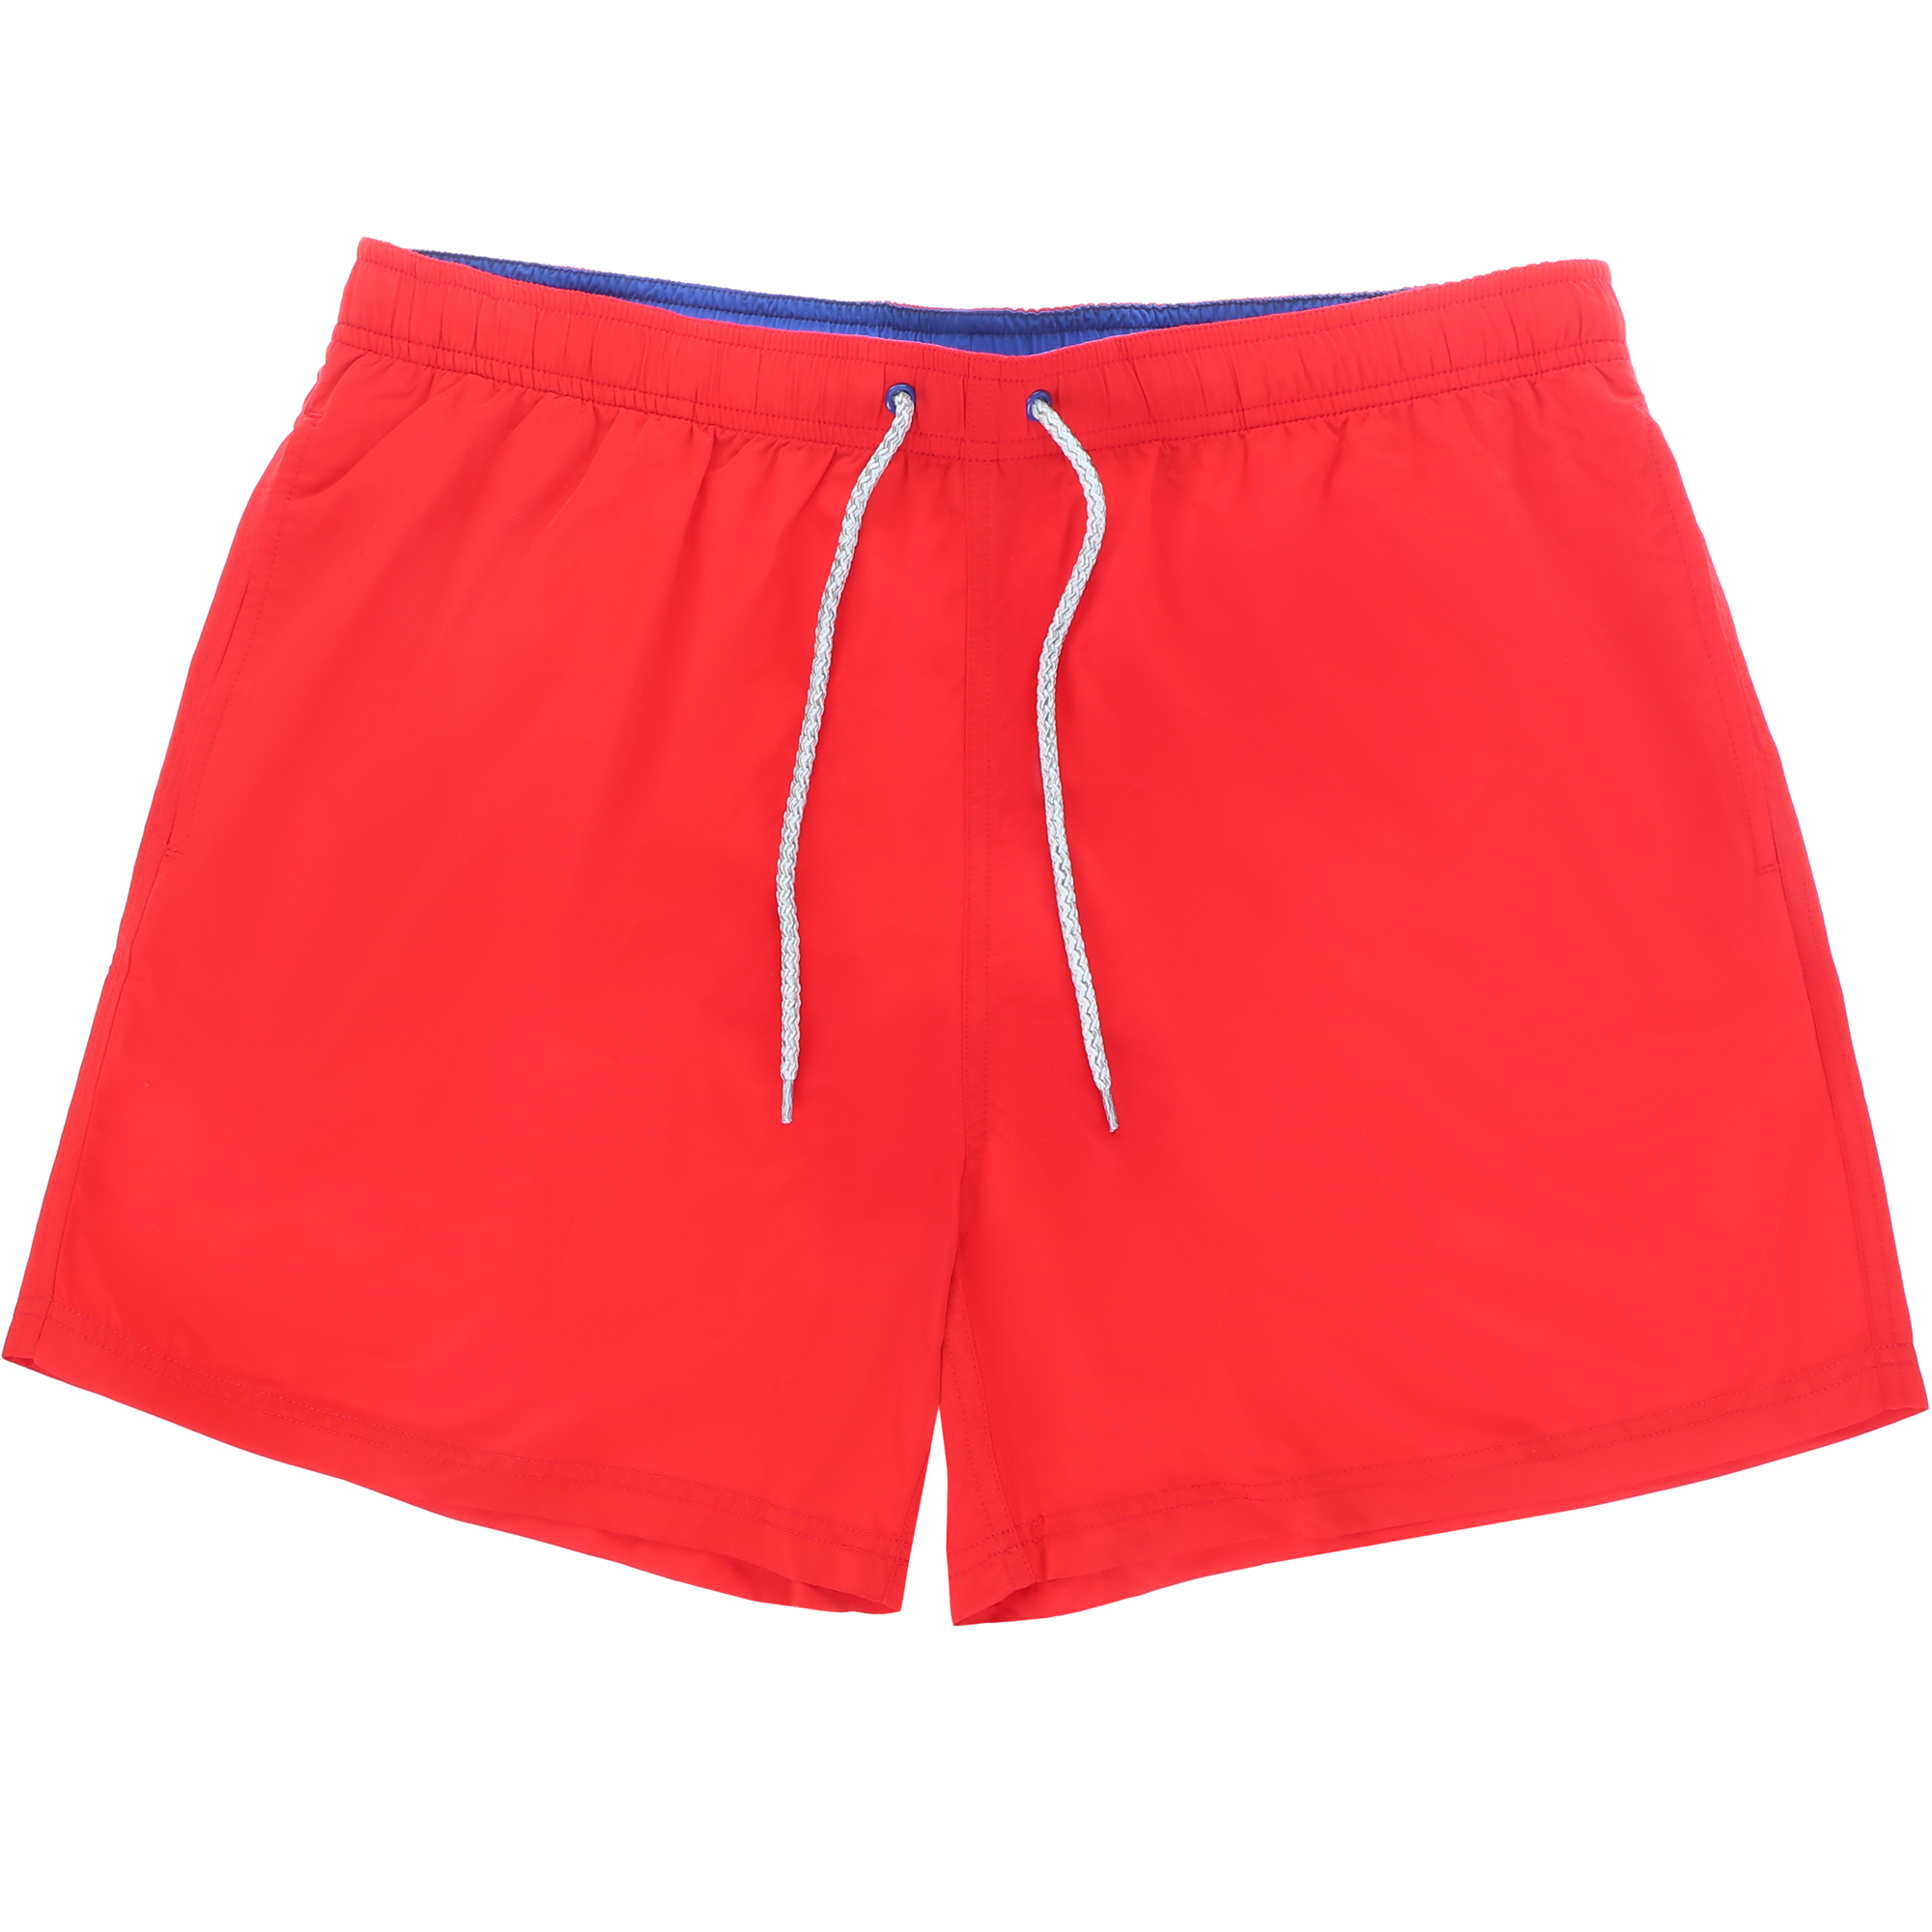 Мужские пляжные шорты Joyord красные, цвет красный, размер XXL - фото 1